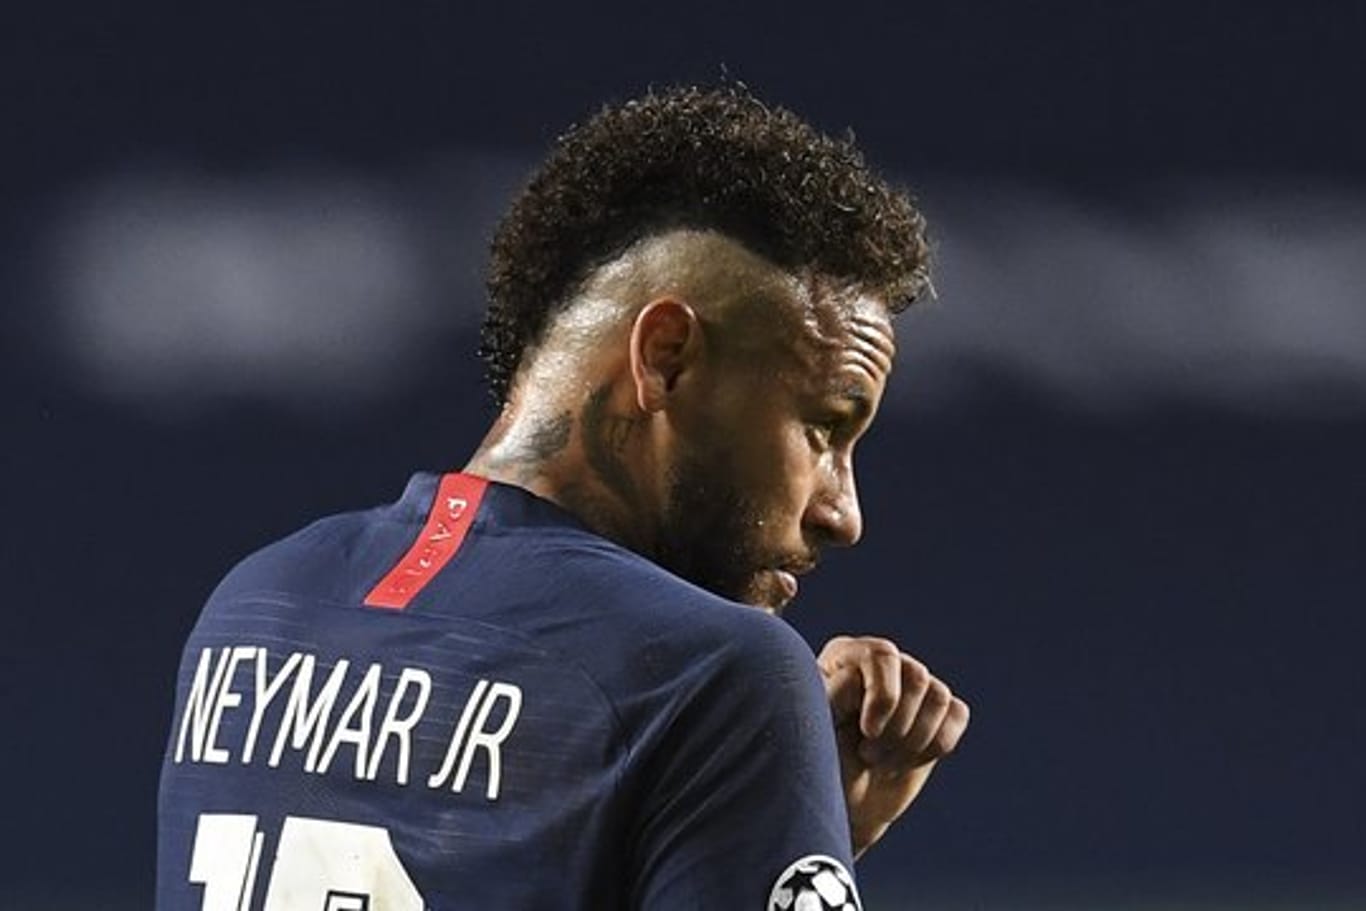 Brasiliens Nationalspieler Neymar hatte sich erst vor kurzem mit dem Coronavirus infiziert.